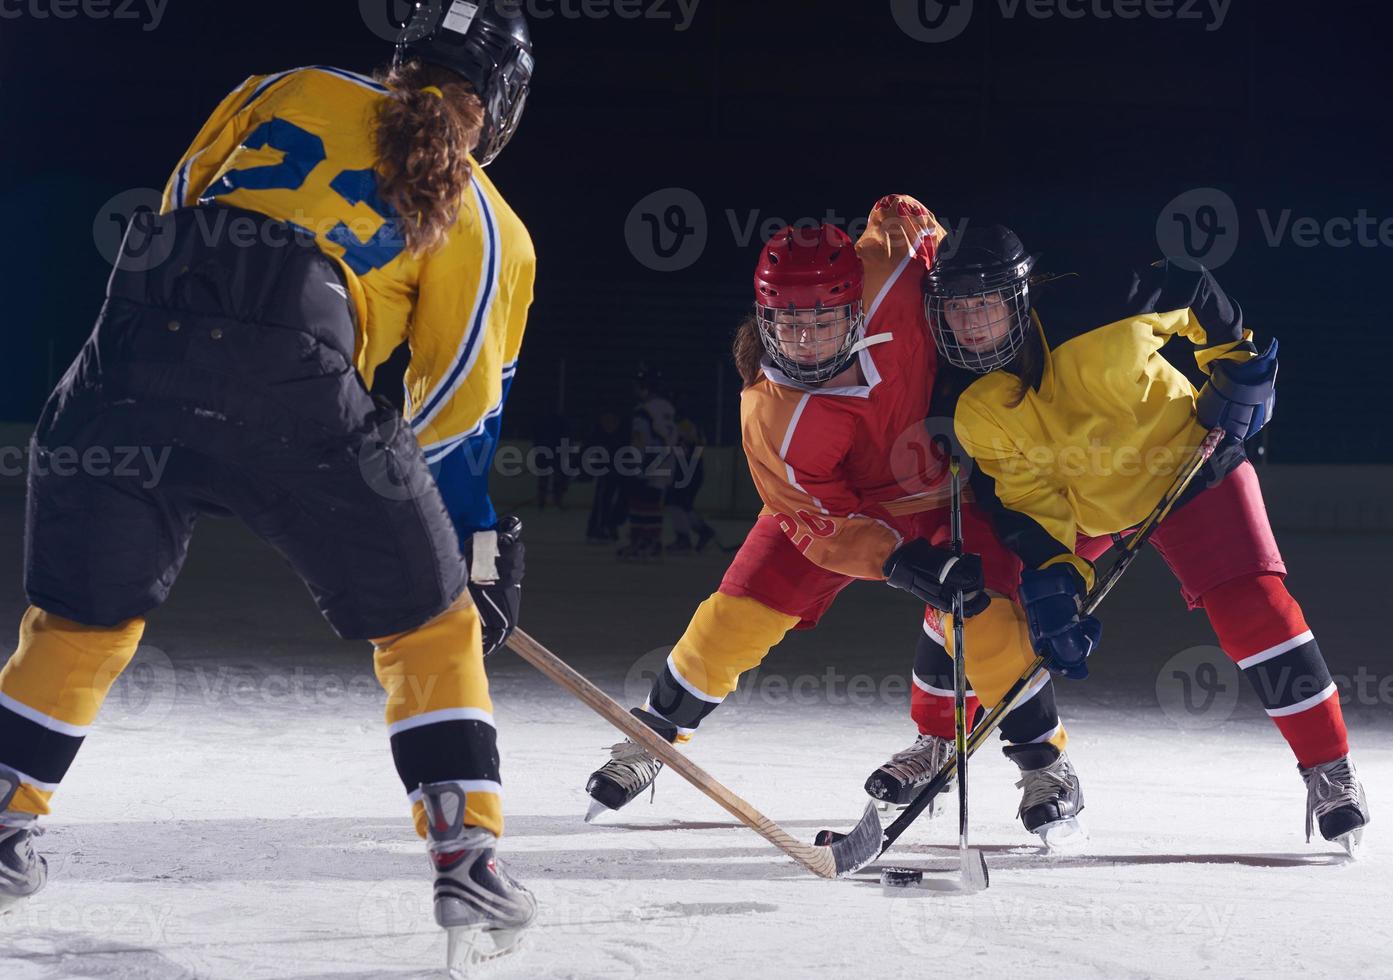 jogadores de esporte de hóquei no gelo adolescente em ação foto